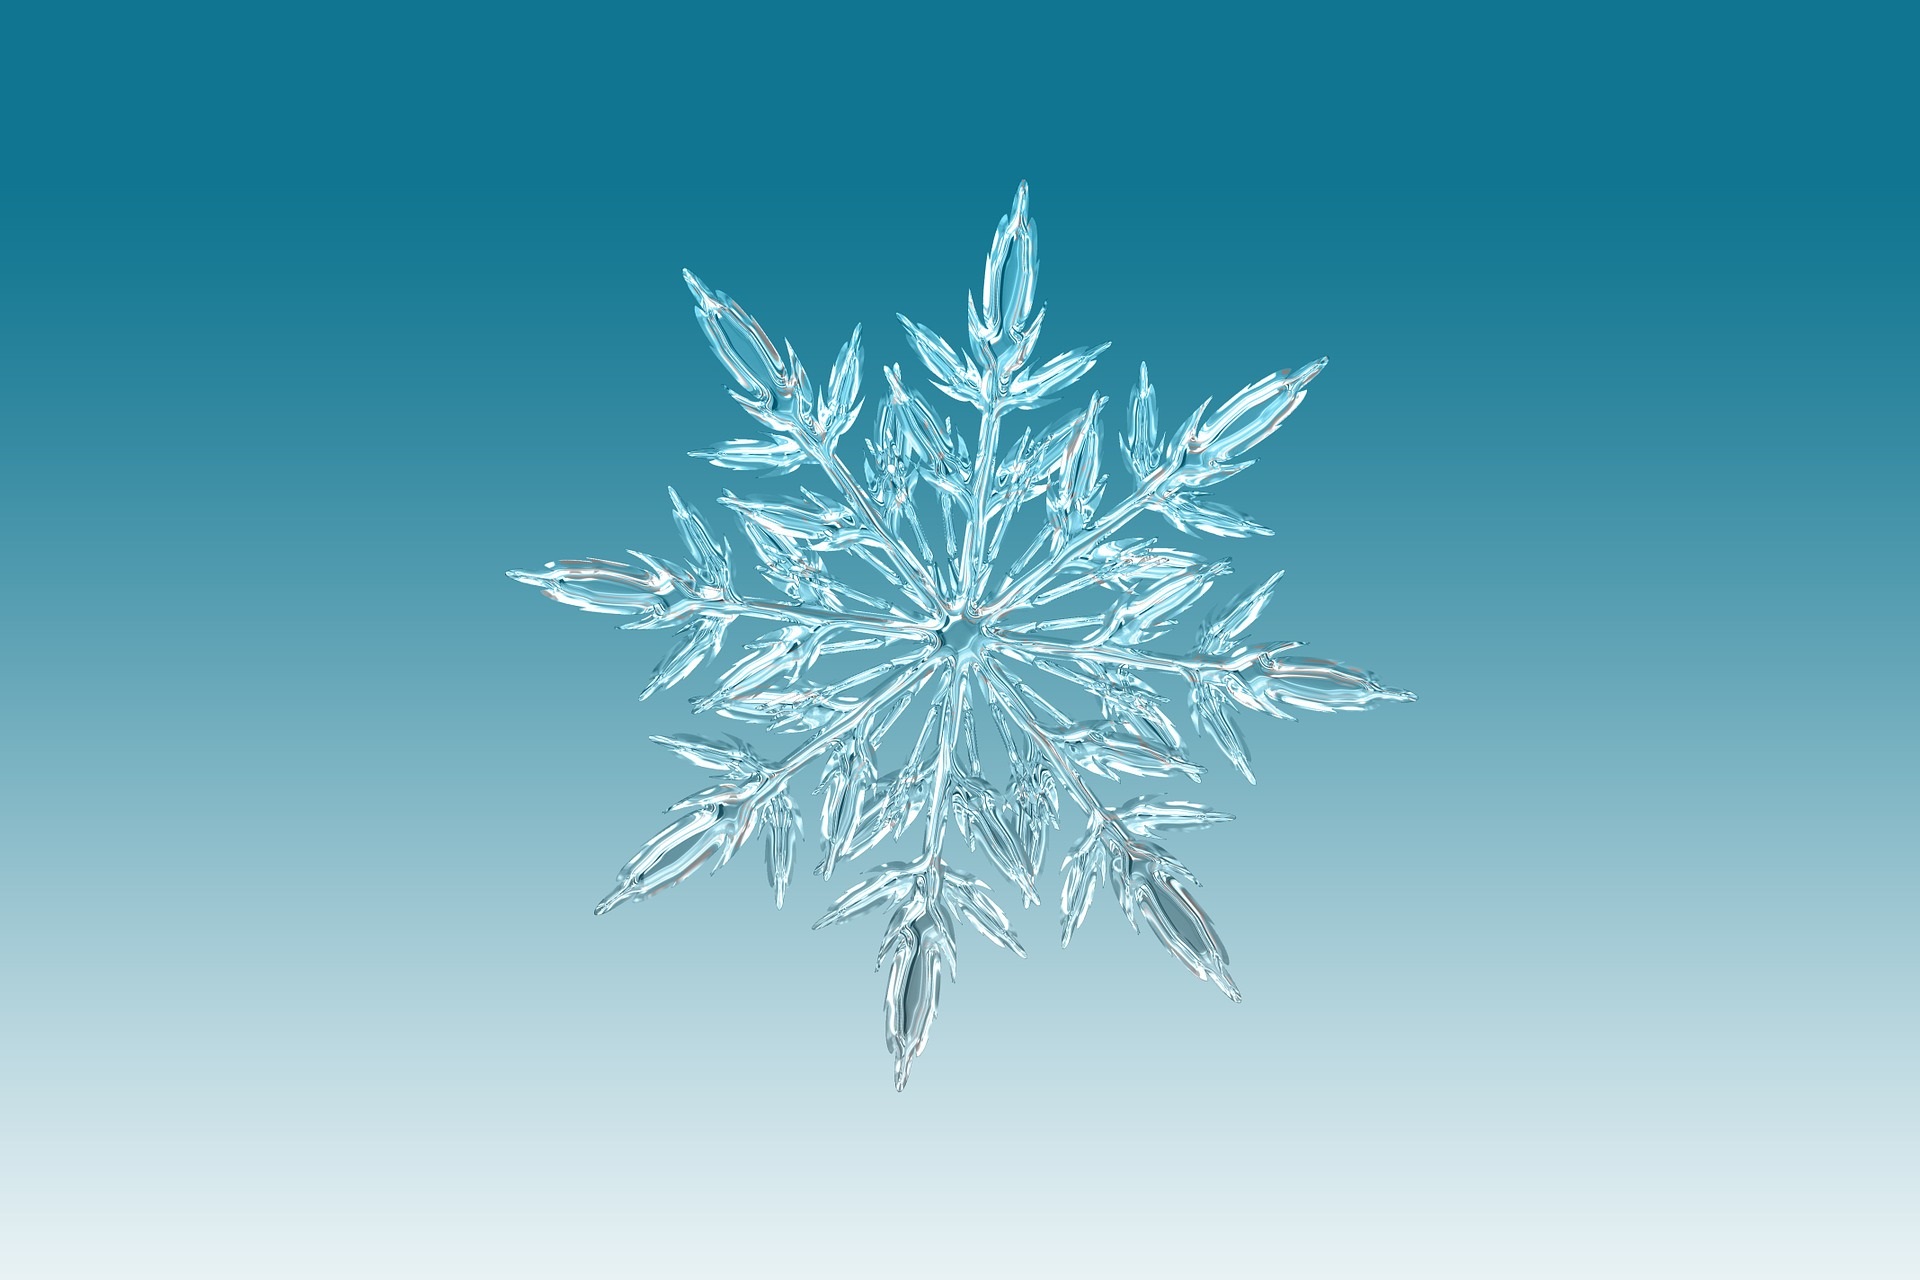 Snowflake at a glance!